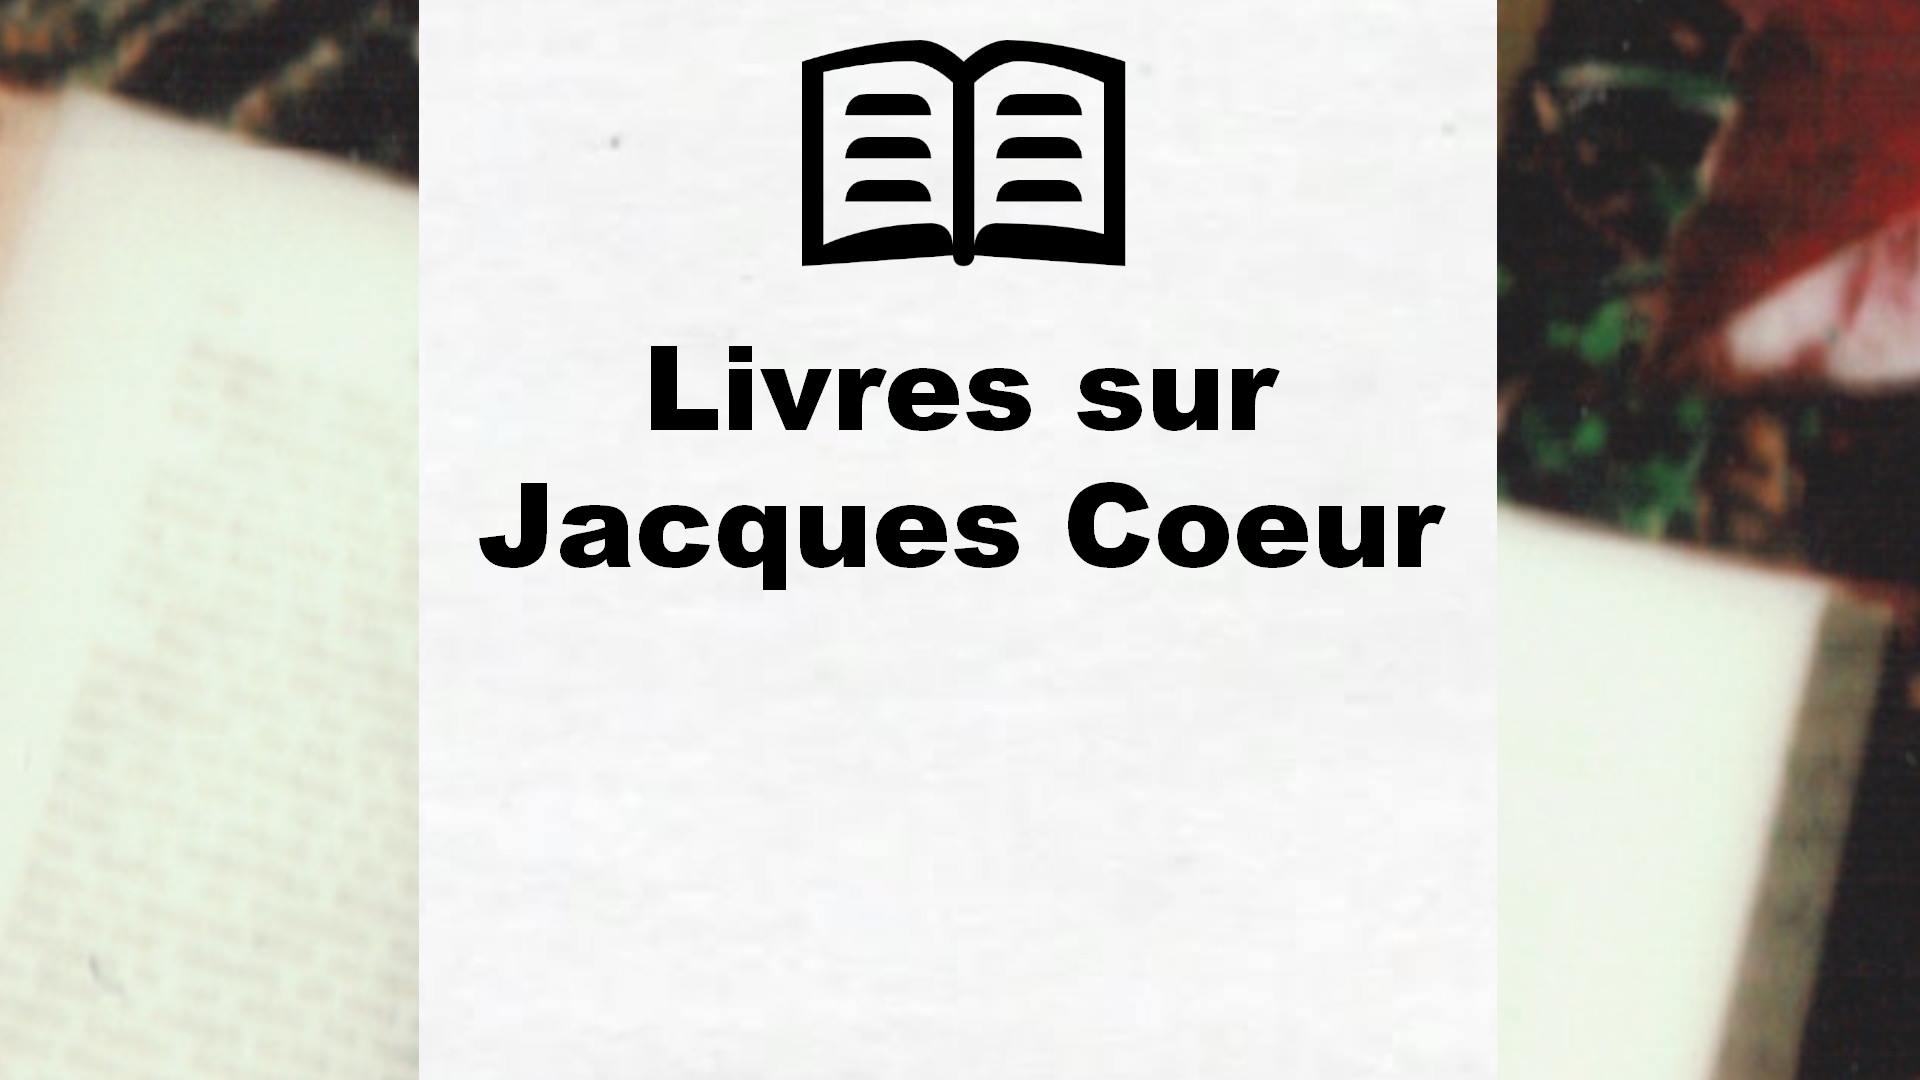 Livres sur Jacques Coeur